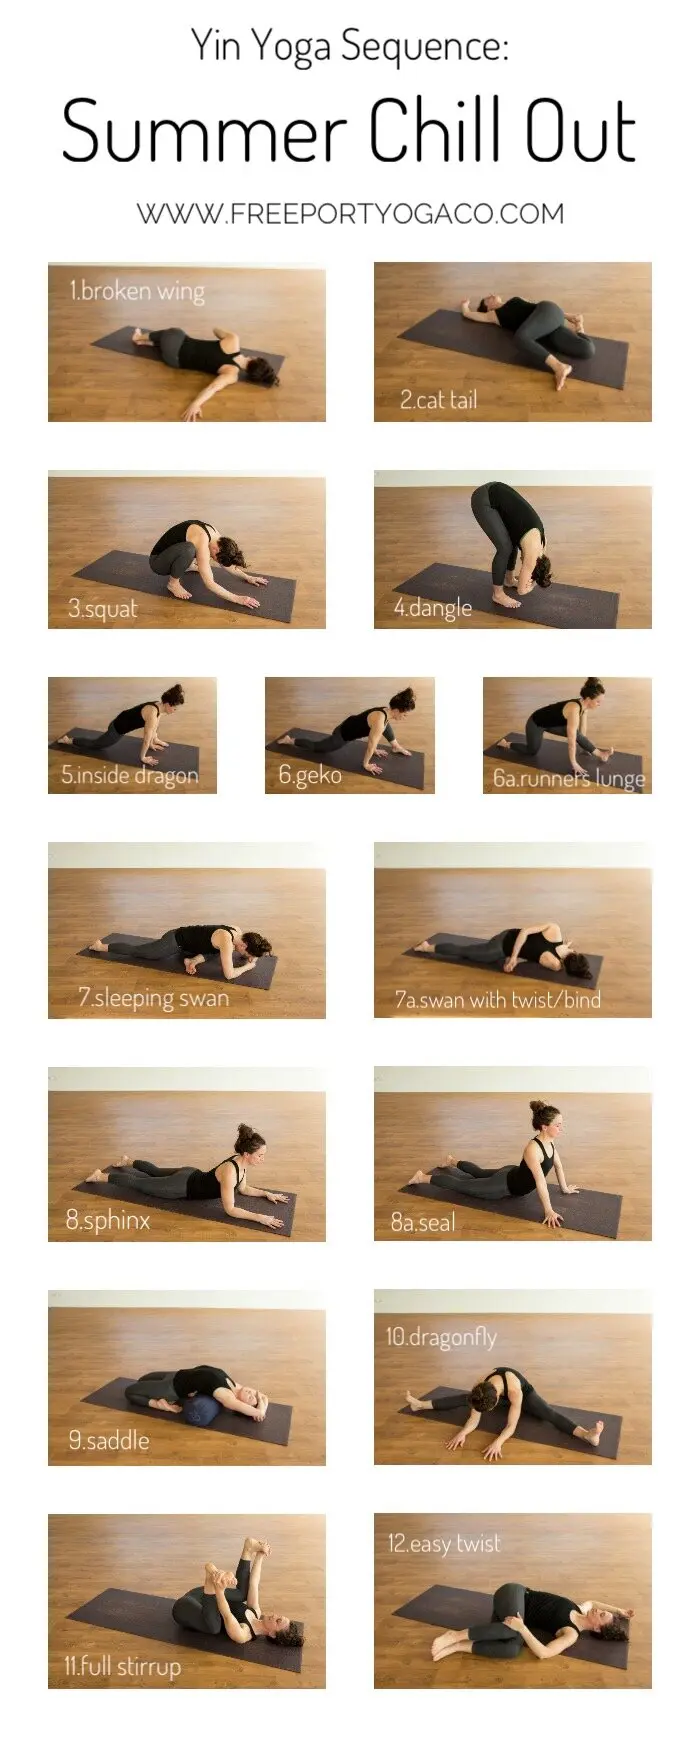 list of yin yoga poses - Does Yin Yoga have peak poses